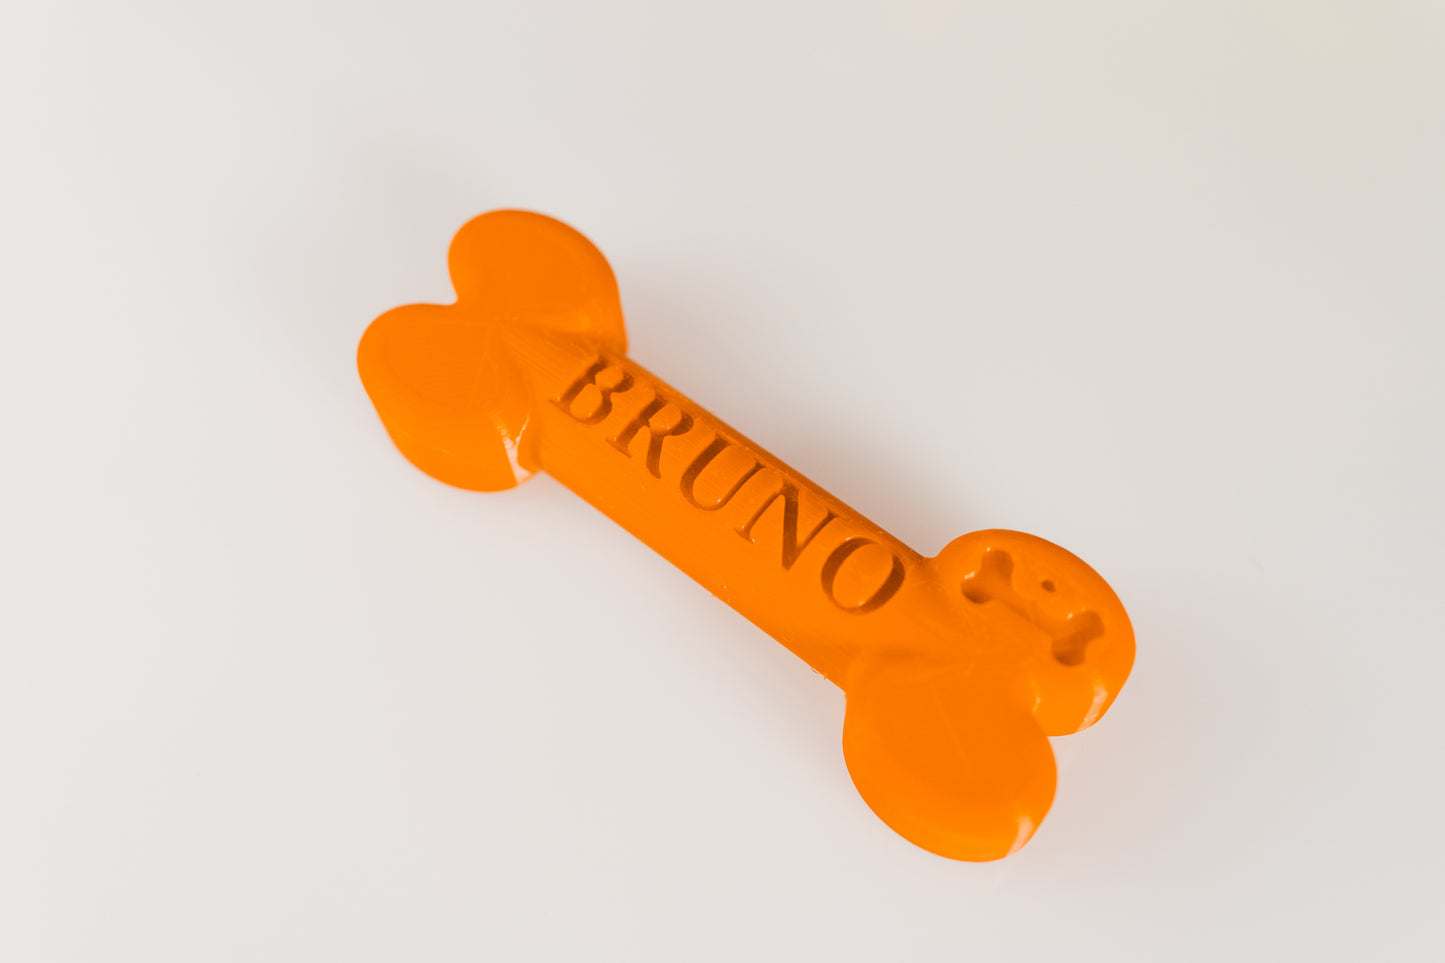 3D Printed dog bone